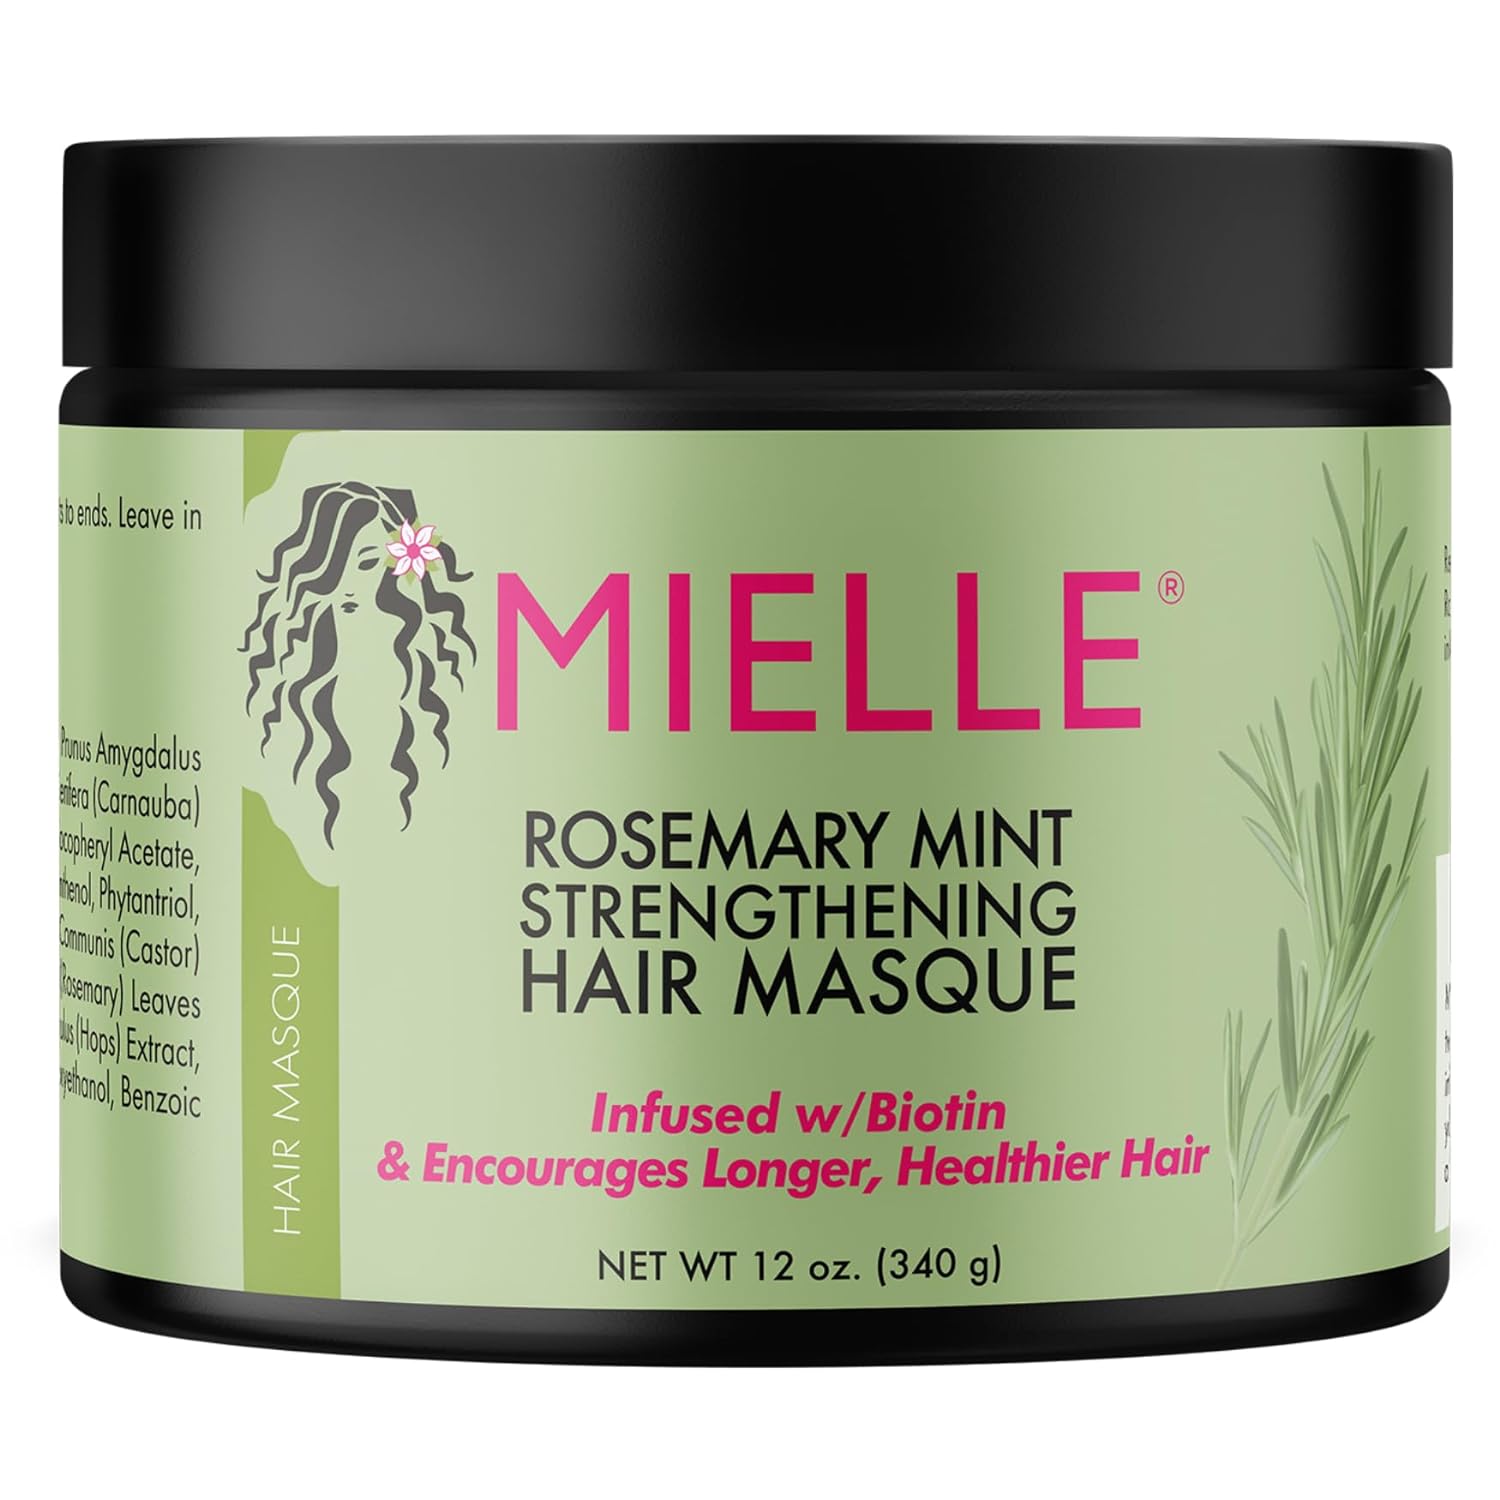 Mielle Rosemary Mint Strengthening Hair Mask, 12 Fluid Ounces